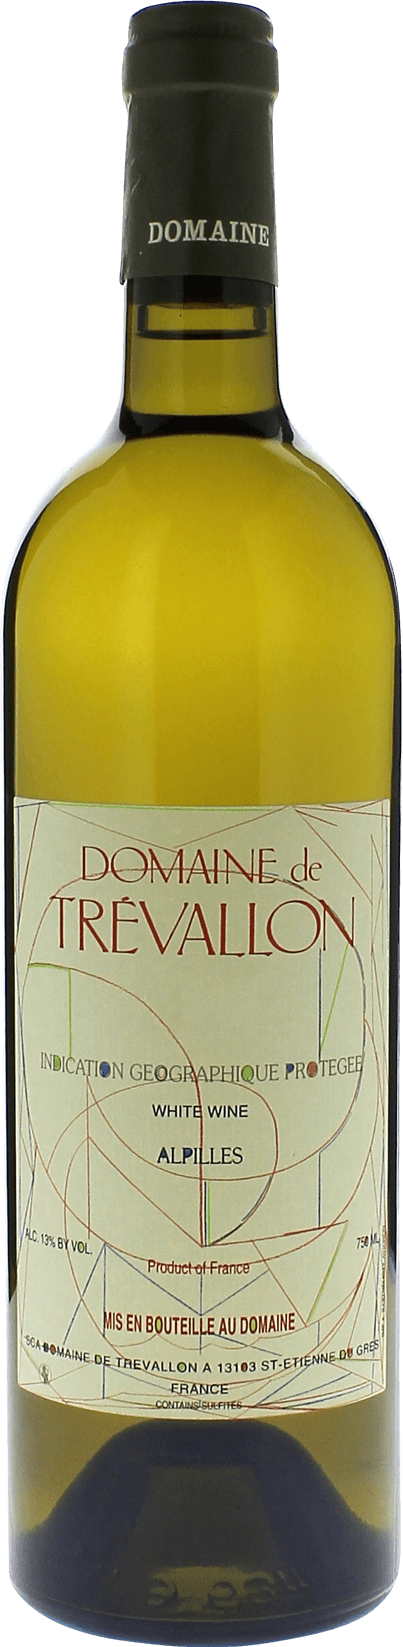 Domaine de trevallon blanc 2018  Vin de Pays, Provence